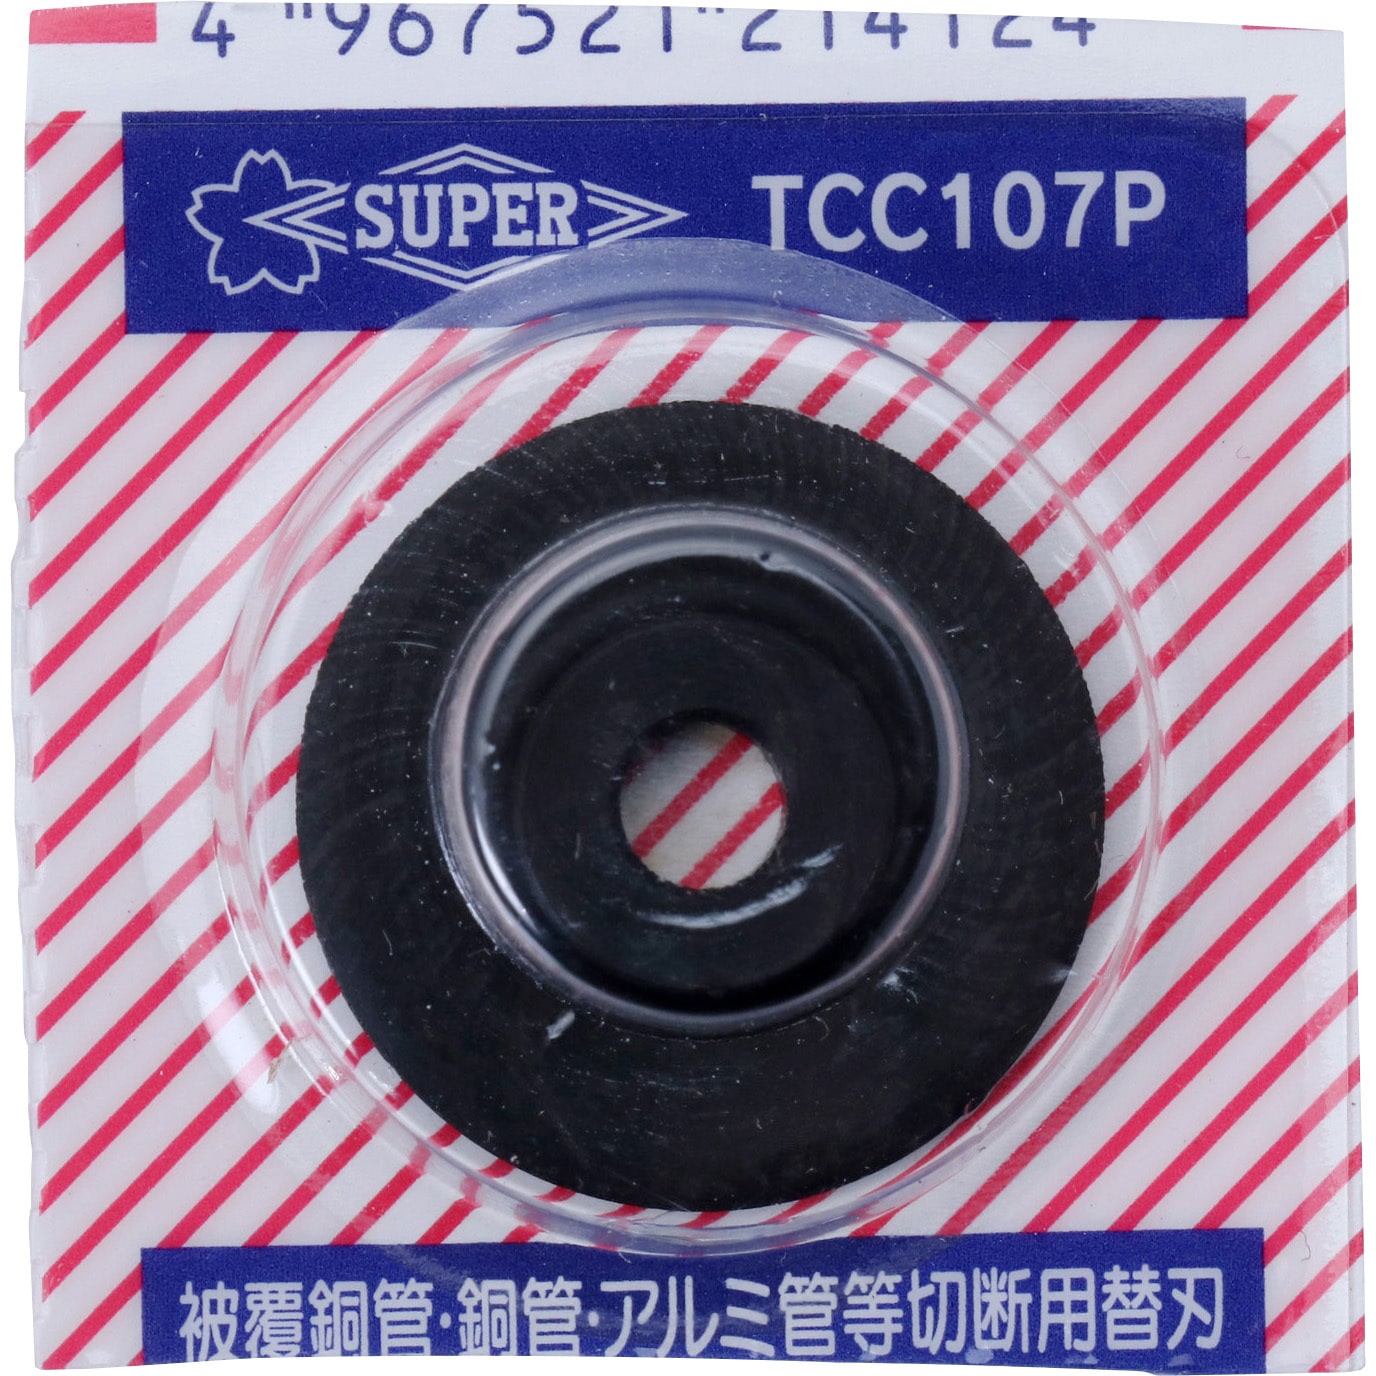 TCC107P チューブカッター用替刃 1枚 スーパーツール 【通販サイトMonotaRO】